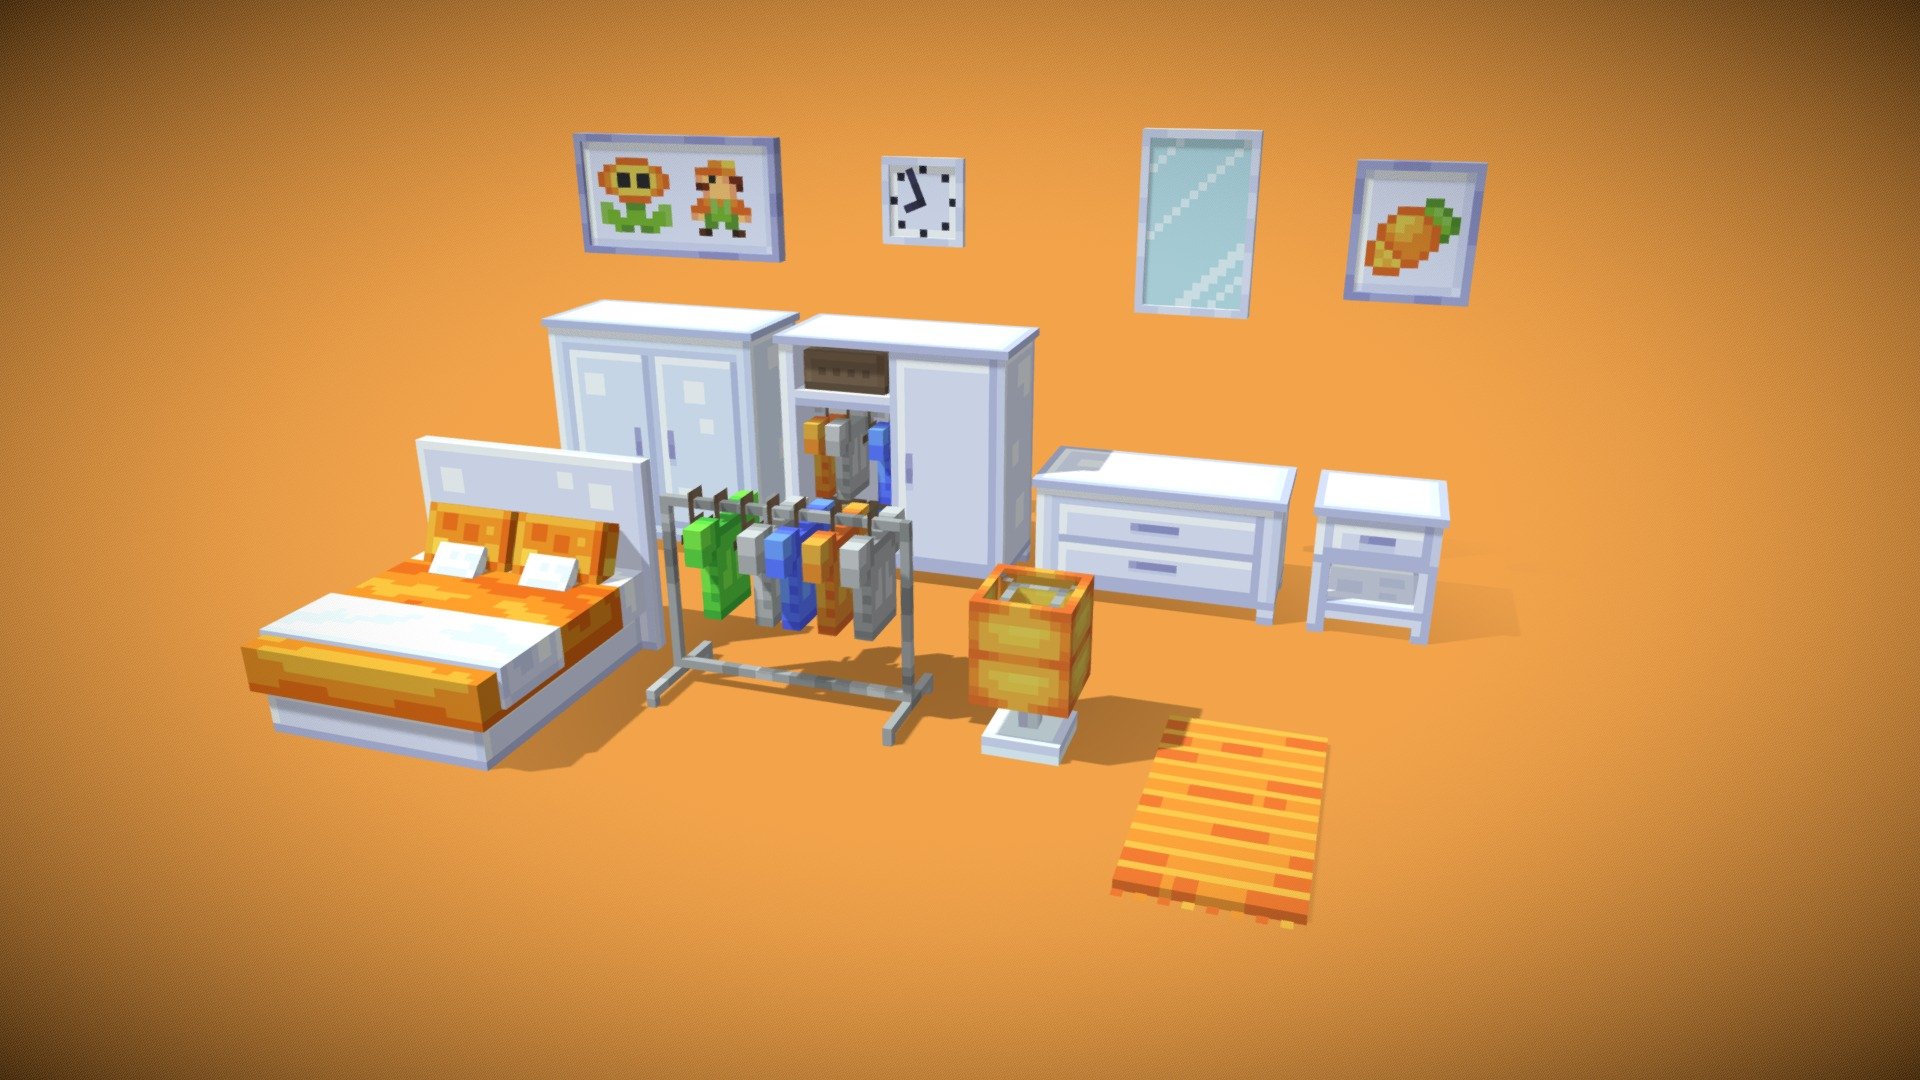 Available on https://mcmodels.net/model/bedroom-furniture-set/

Bedroom Furniture for ItemsAdder and Oraxen.

Designed by LZLeon - Bedroom Furniture - Minecraft - 3D model by LZ Blocks (@LZBlocks) 3d model